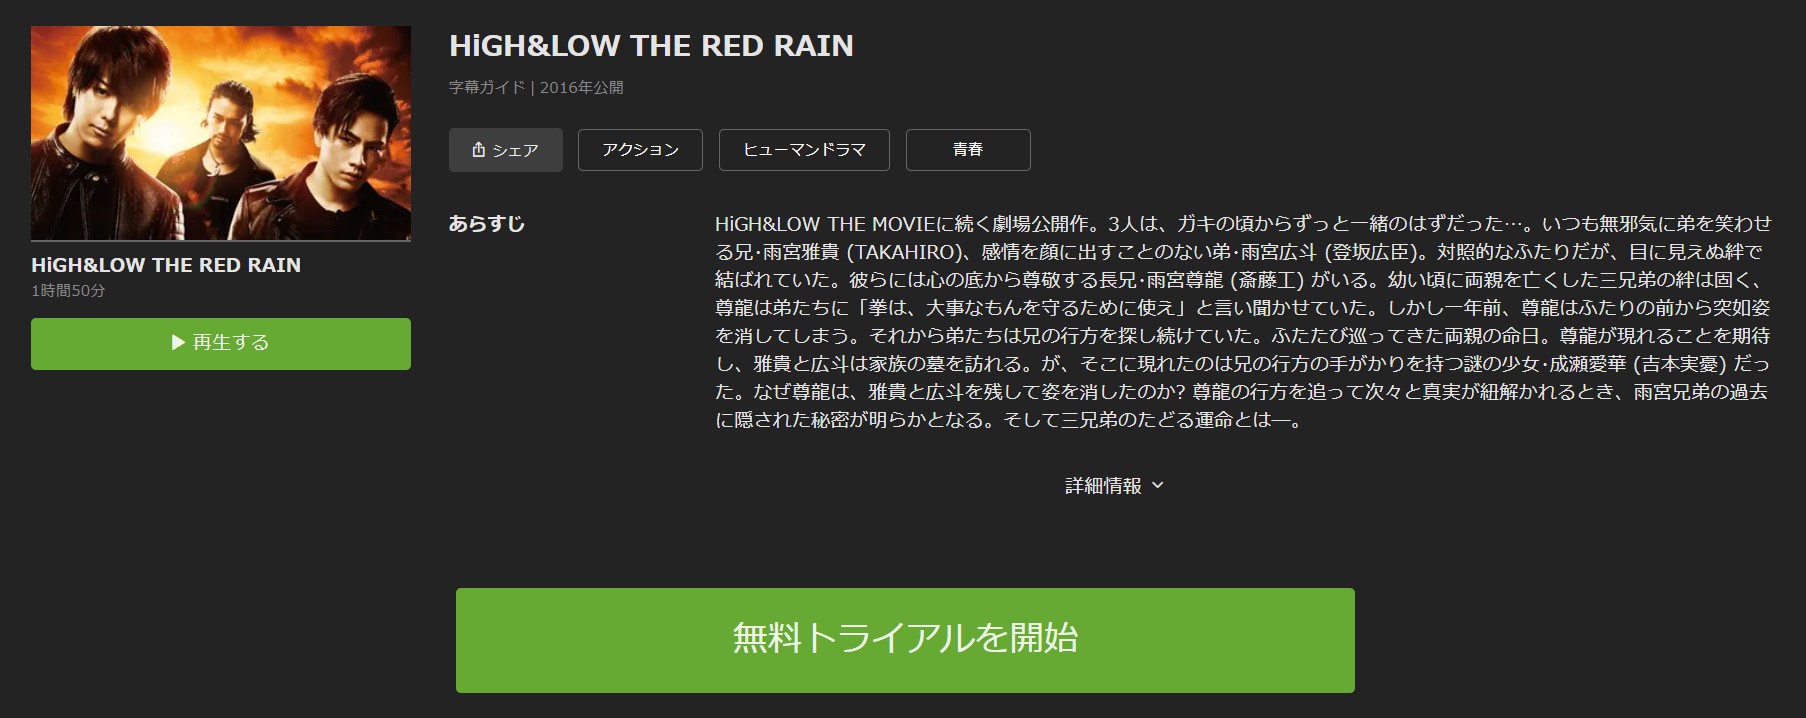 ハイアンドロー THE RED RAIN